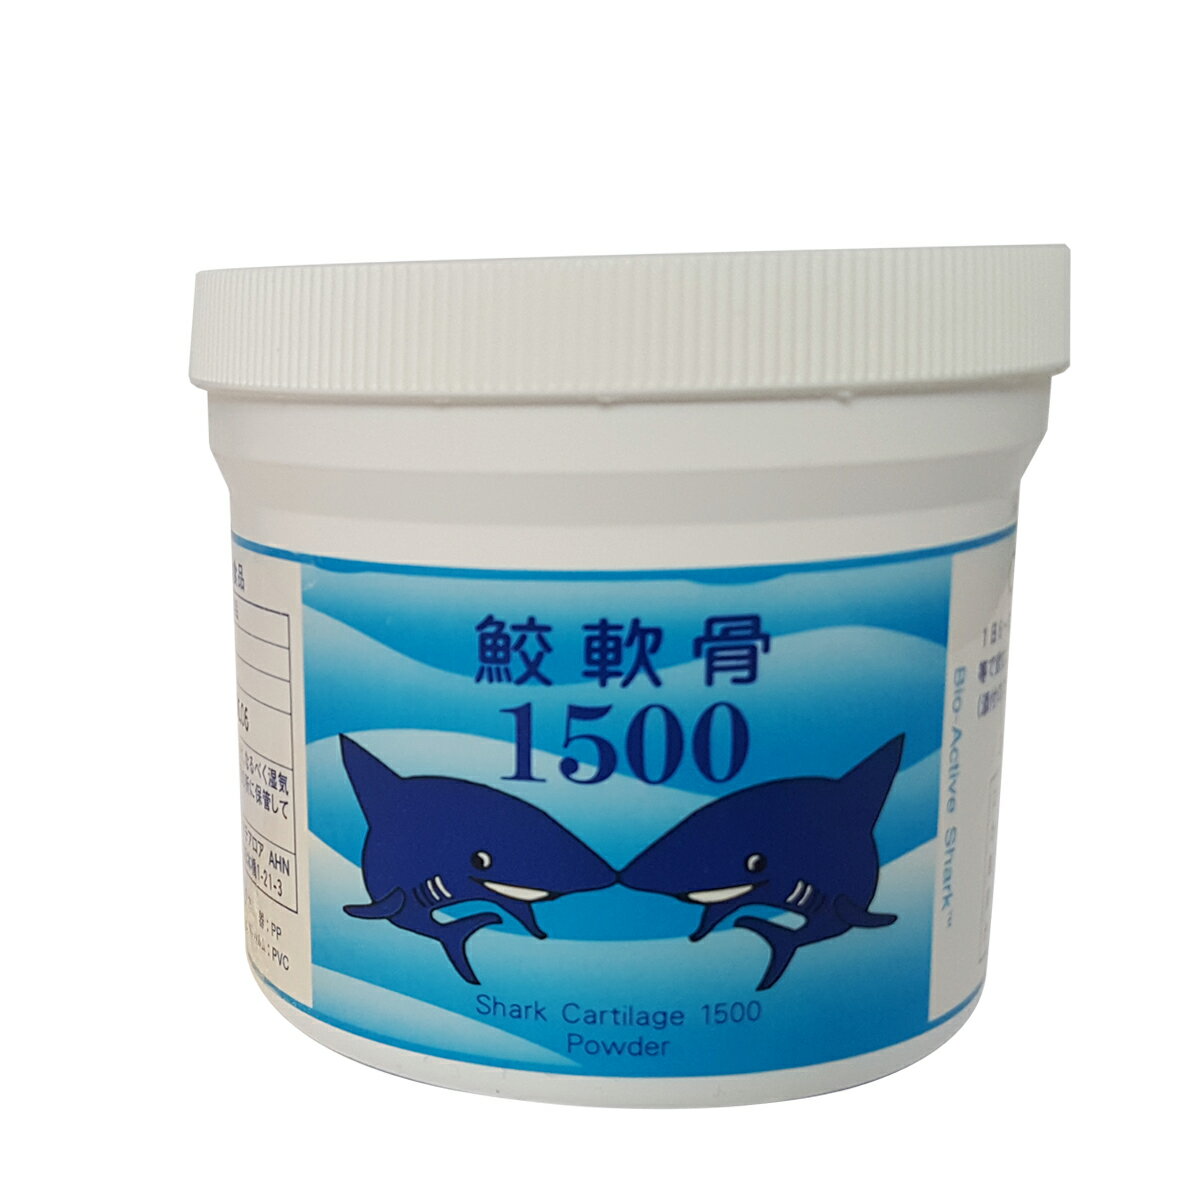 64800円 【国産】 スーパーマコでおなじみアオテアロア社のサメ抽出脂質 ウルトラマコ 270カプセル×10個セット